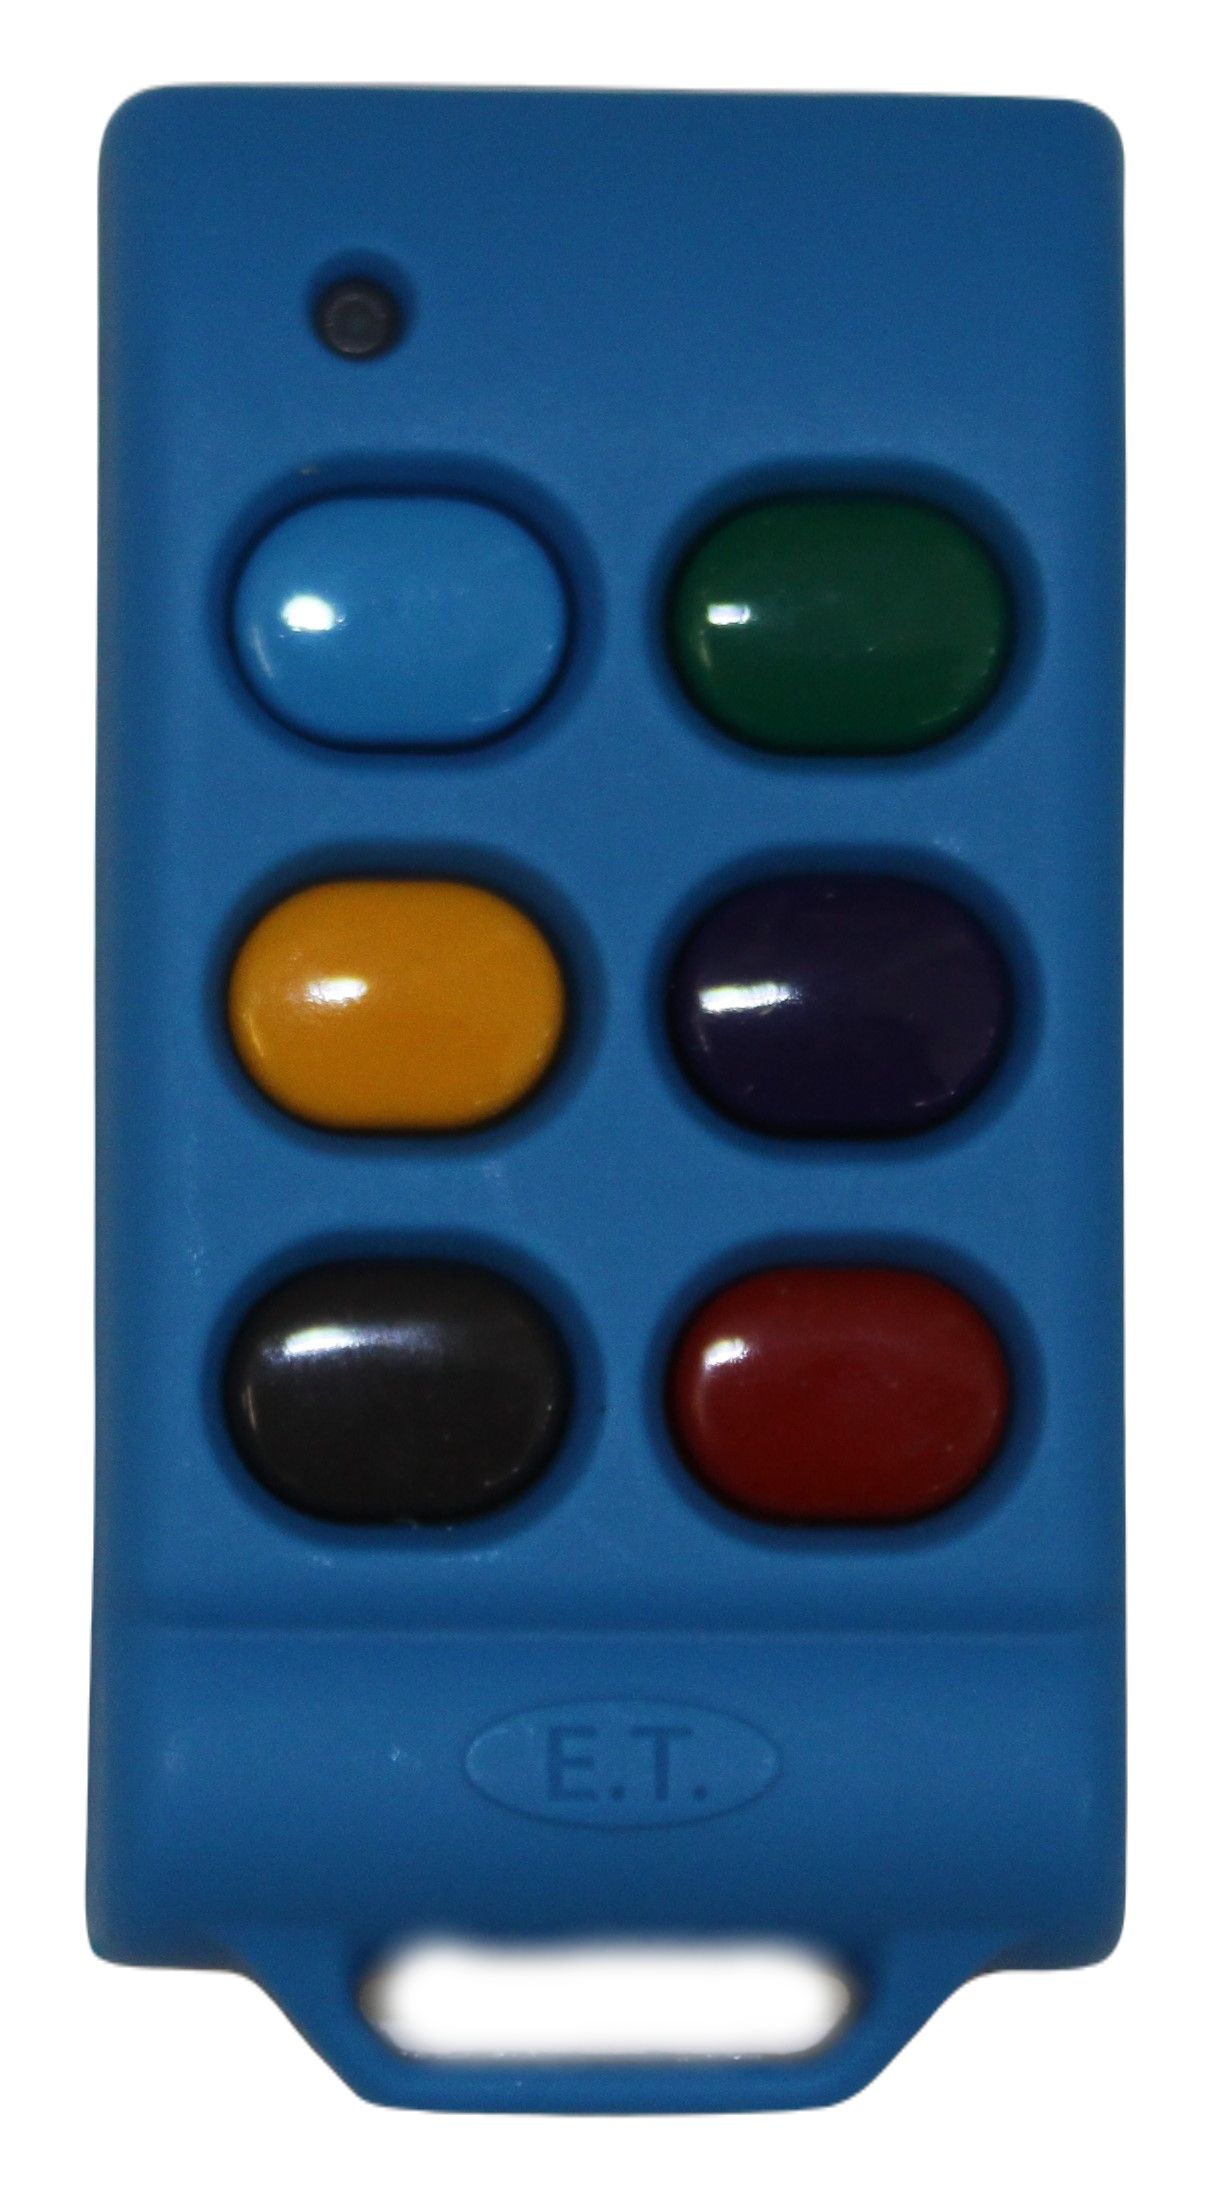 et-remote-6-button-remote